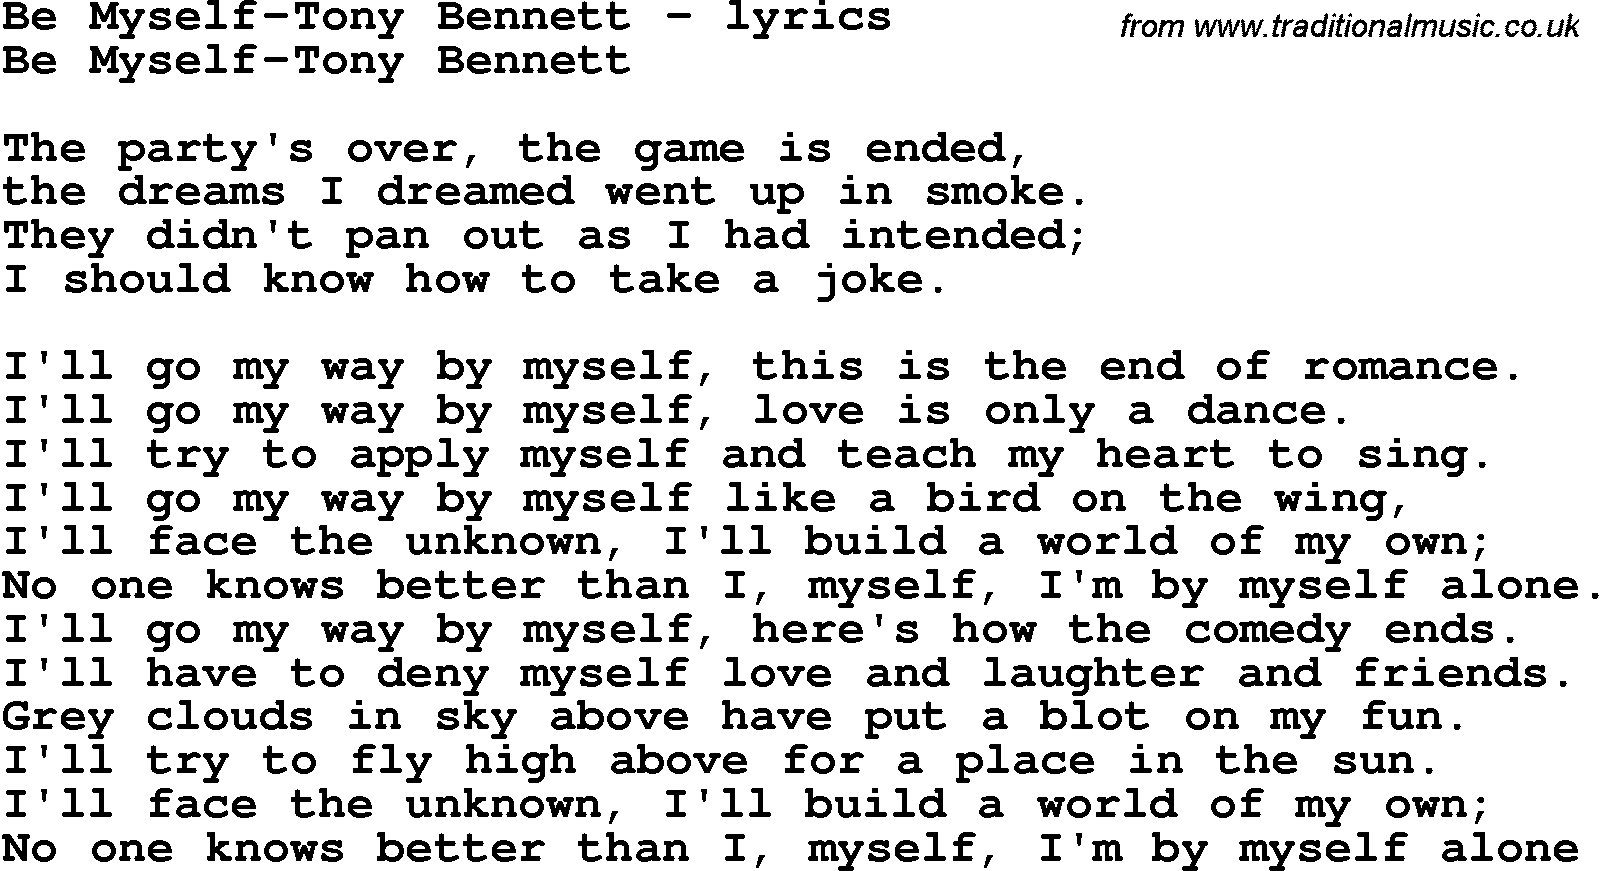 Love Song Lyrics for: Be Myself-Tony Bennett